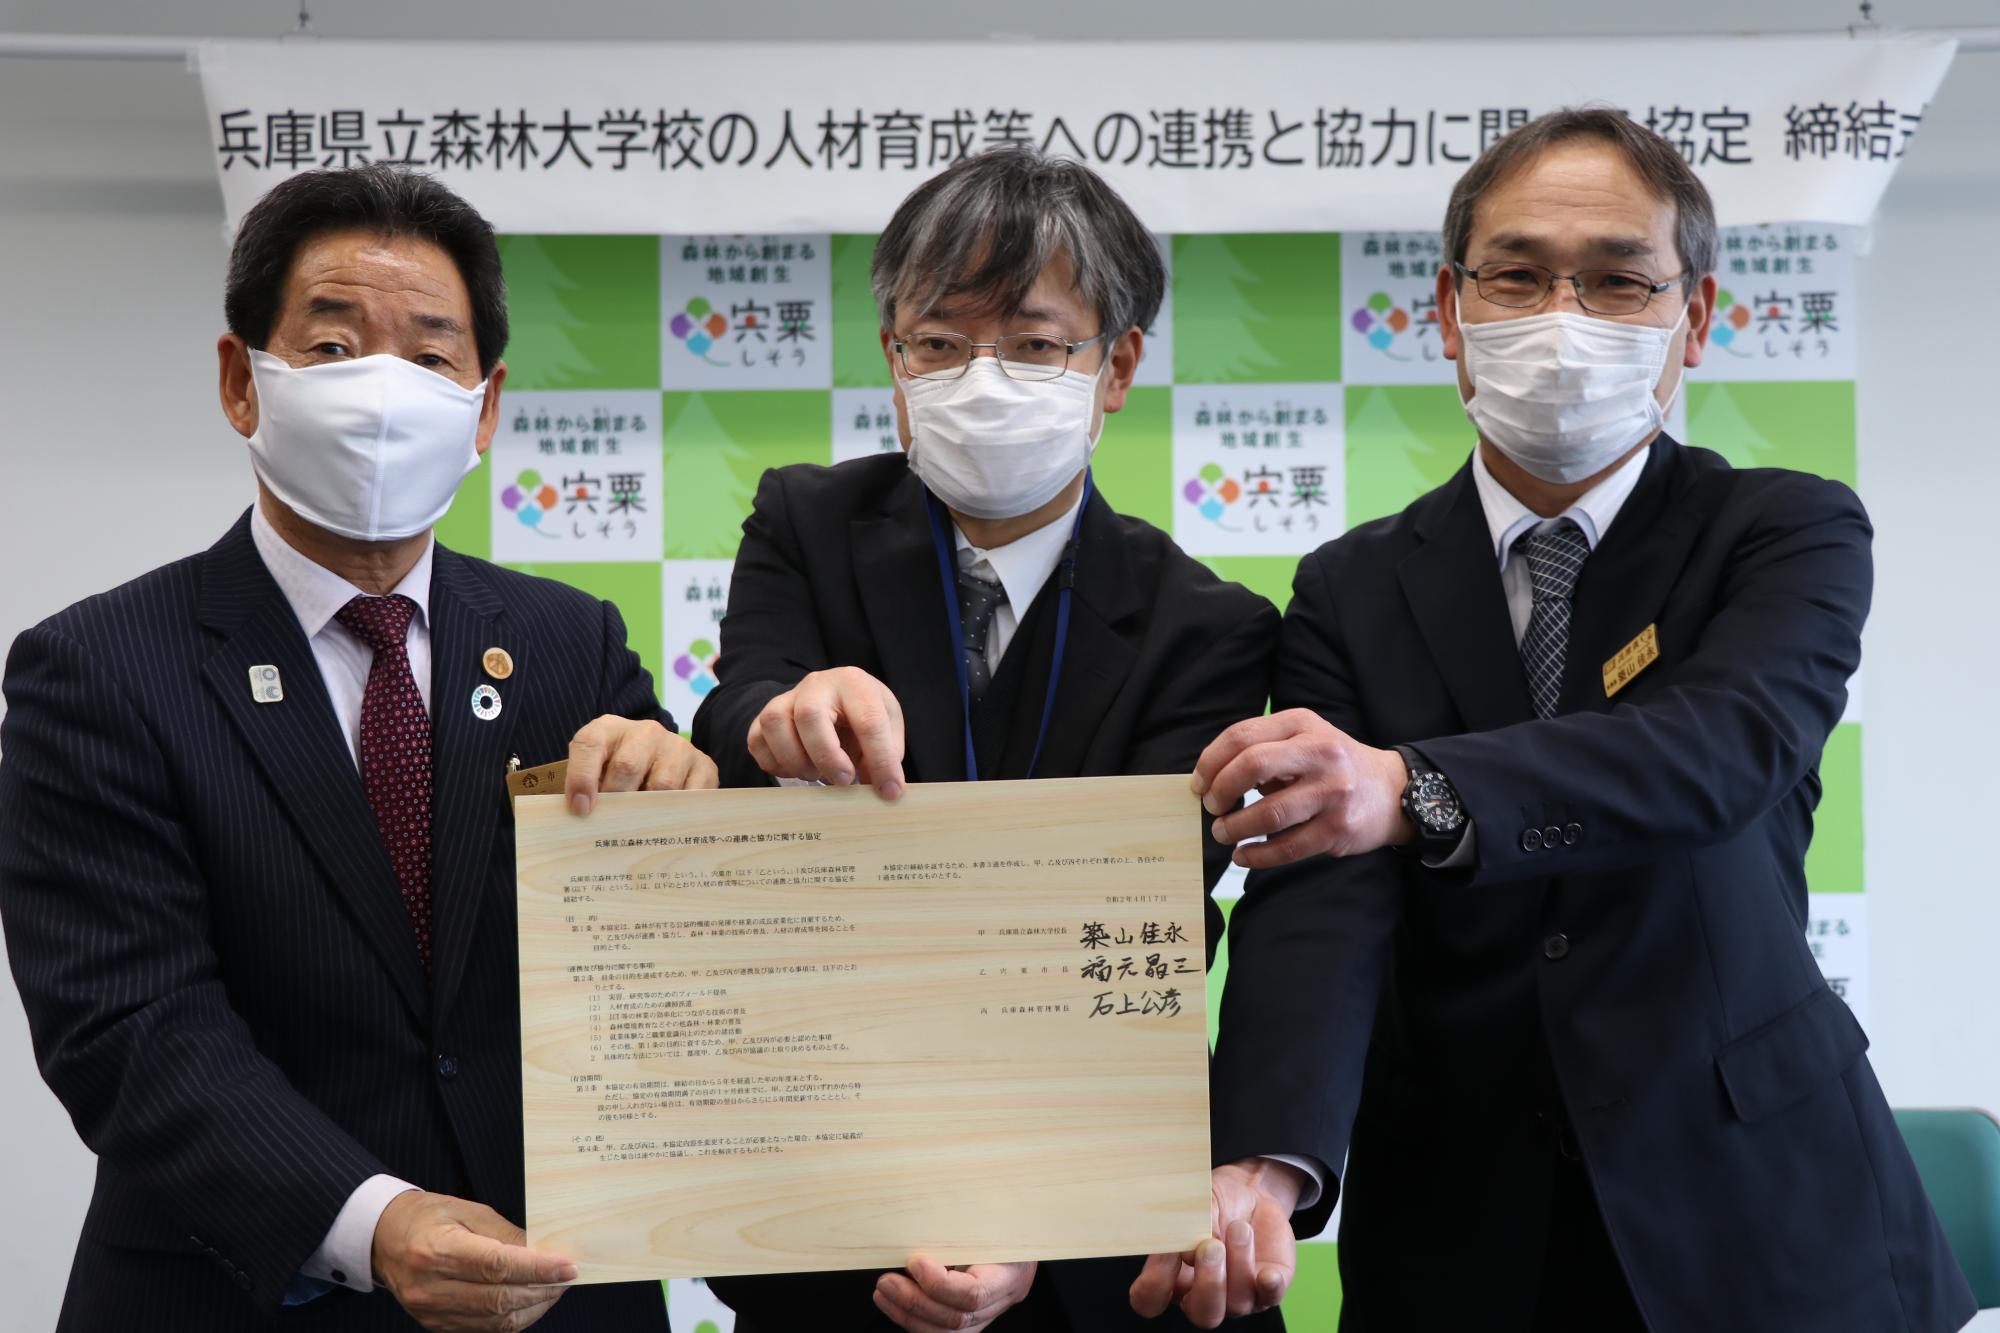 左から福元市長、森林管理署長、森林大学校長が署名した協定書を手にしている写真